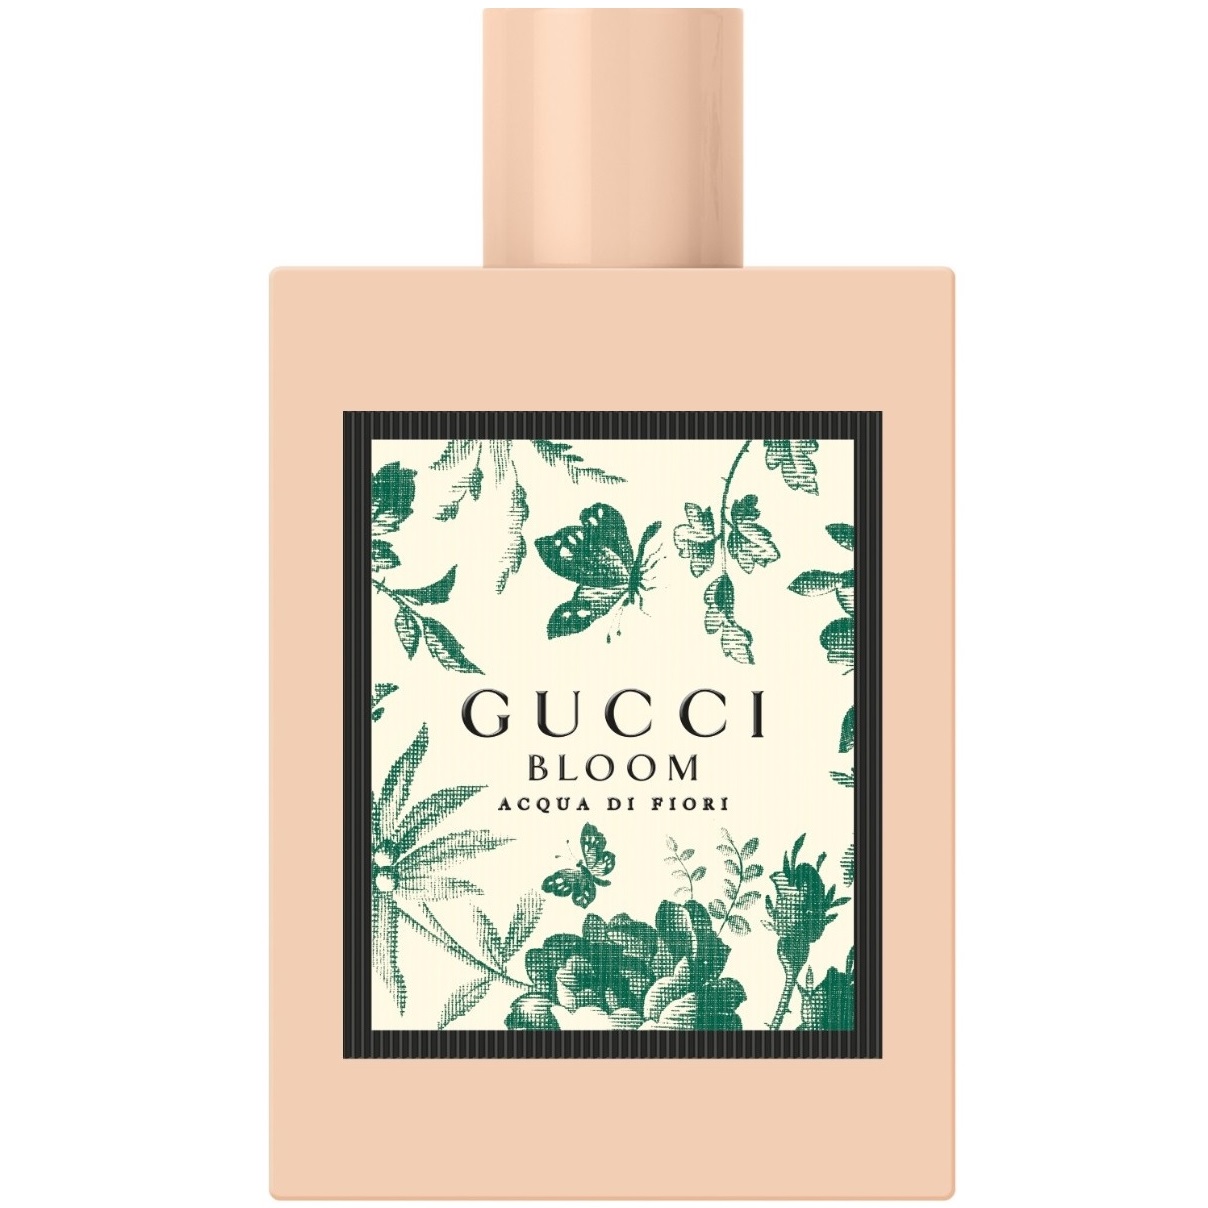 Gucci - Bloom Acqua di Fiori (5мл)